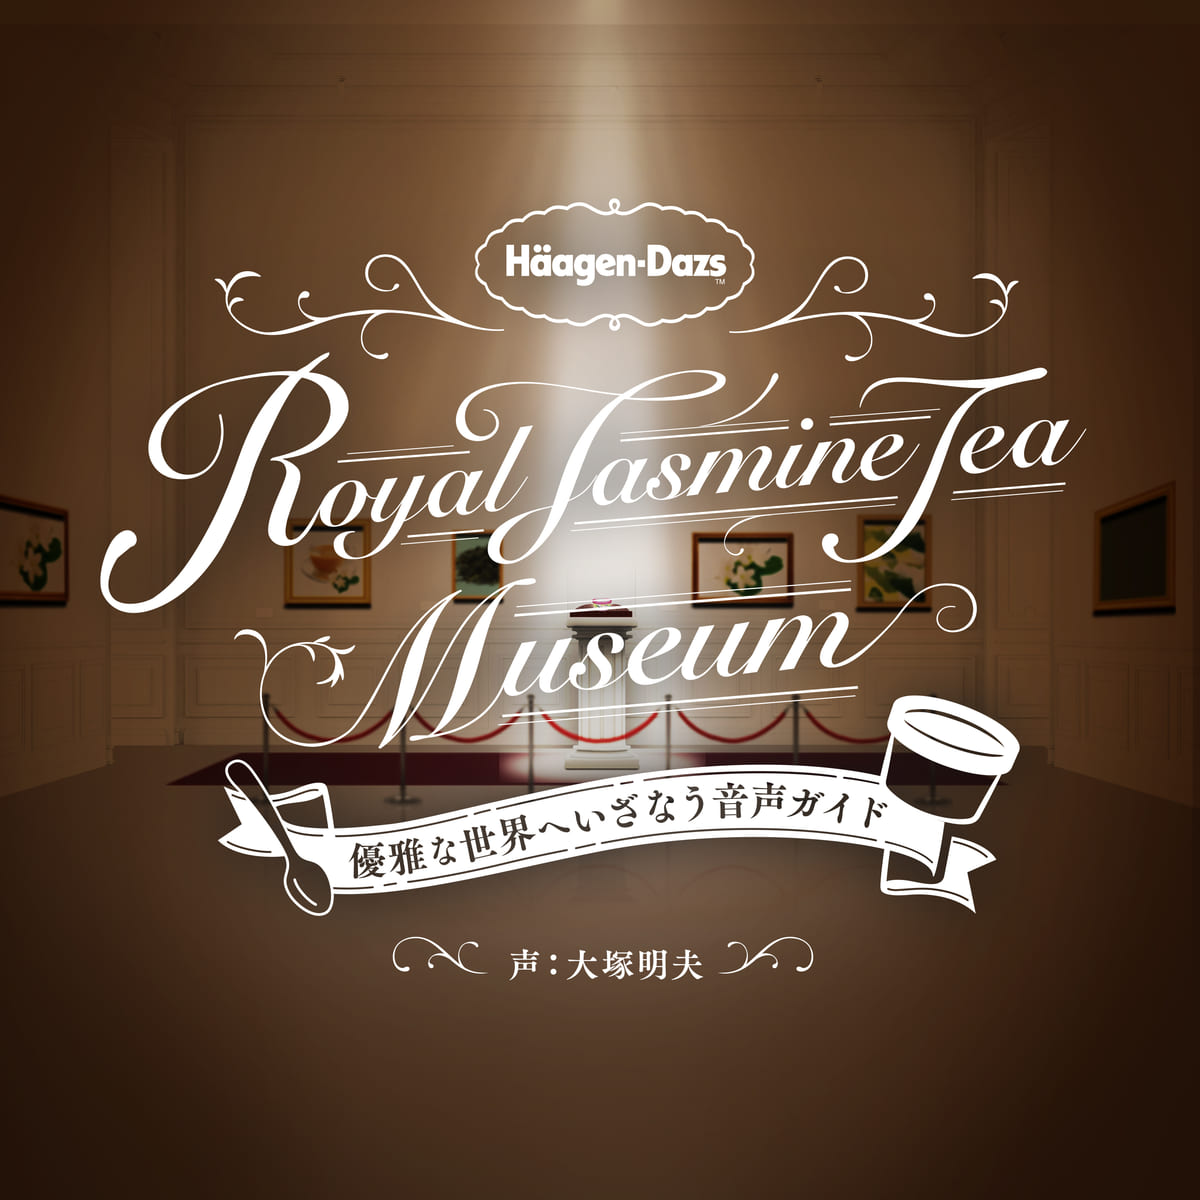 Royal Jasmine Tea Museum